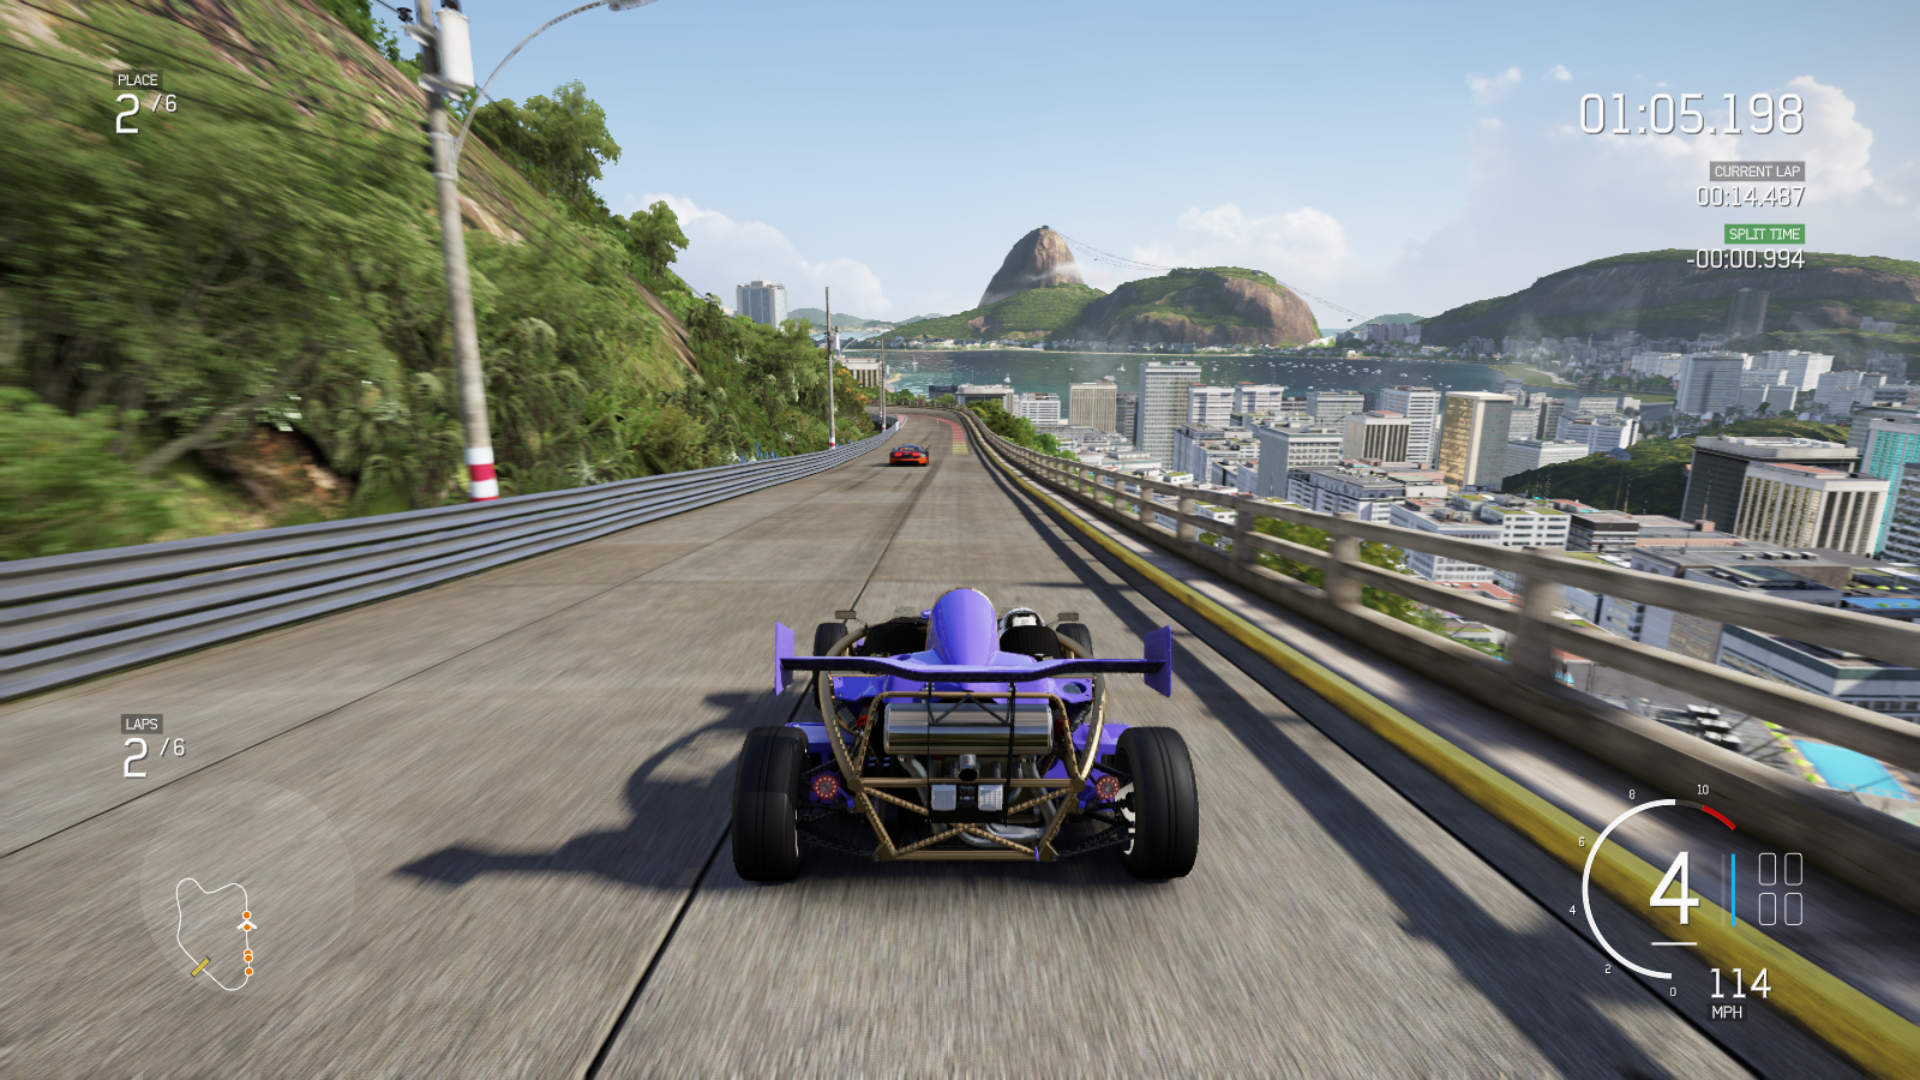 Информация об игре Forza Motorsport 6: Apex –  описание, обзоры, даты выхода дополнений DLC к игре, поддерживаемые платформы и официальный сайт Узнайте полную информацию об игре Forza Motorsport 6: Apex на нашем сайте